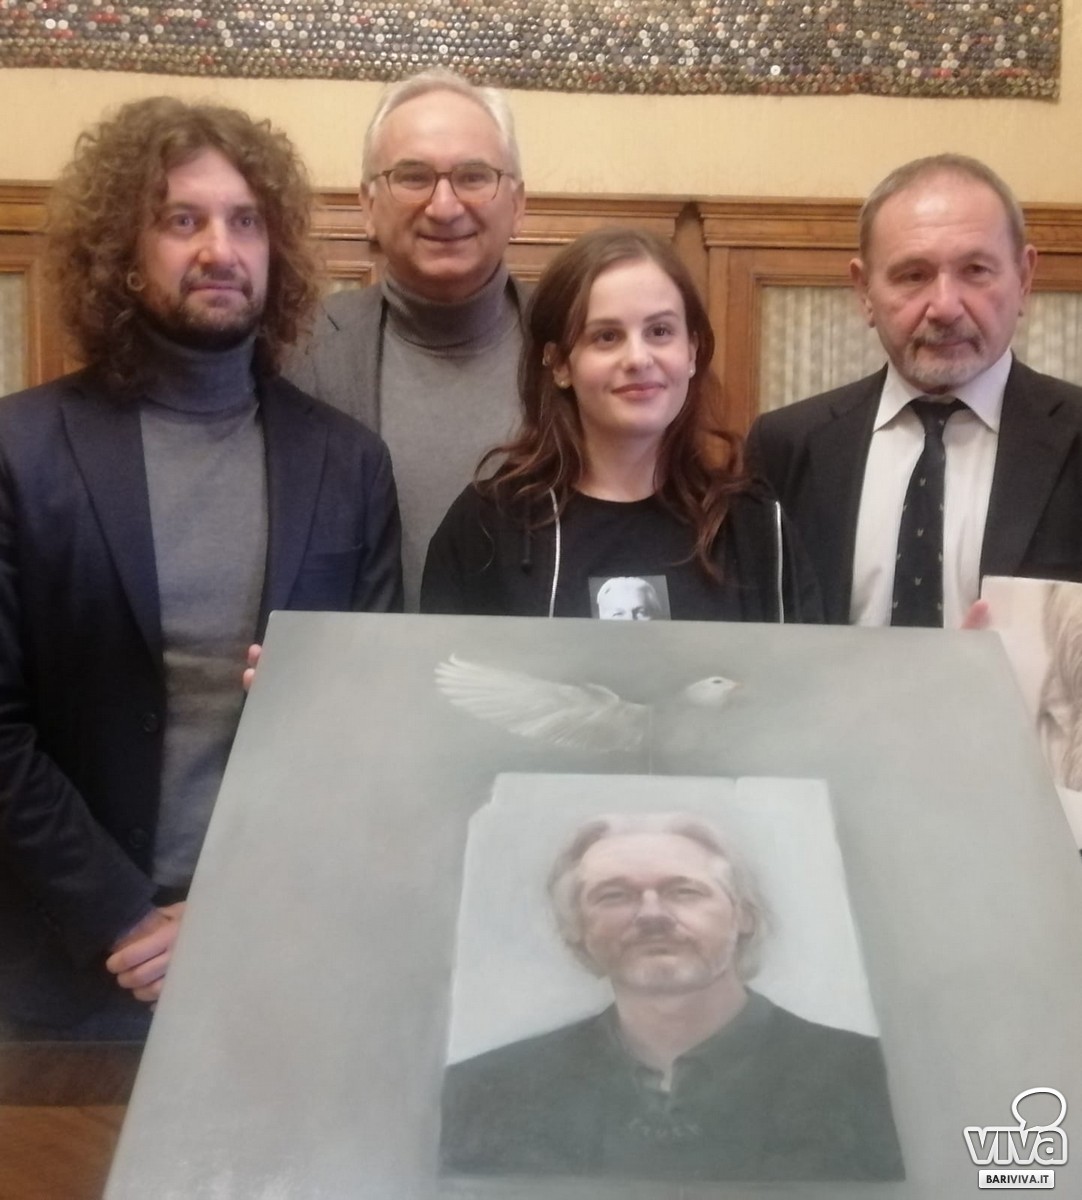 Presentata la mozione per il conferimento della cittadinanza onoraria di Bari a Julian Assange